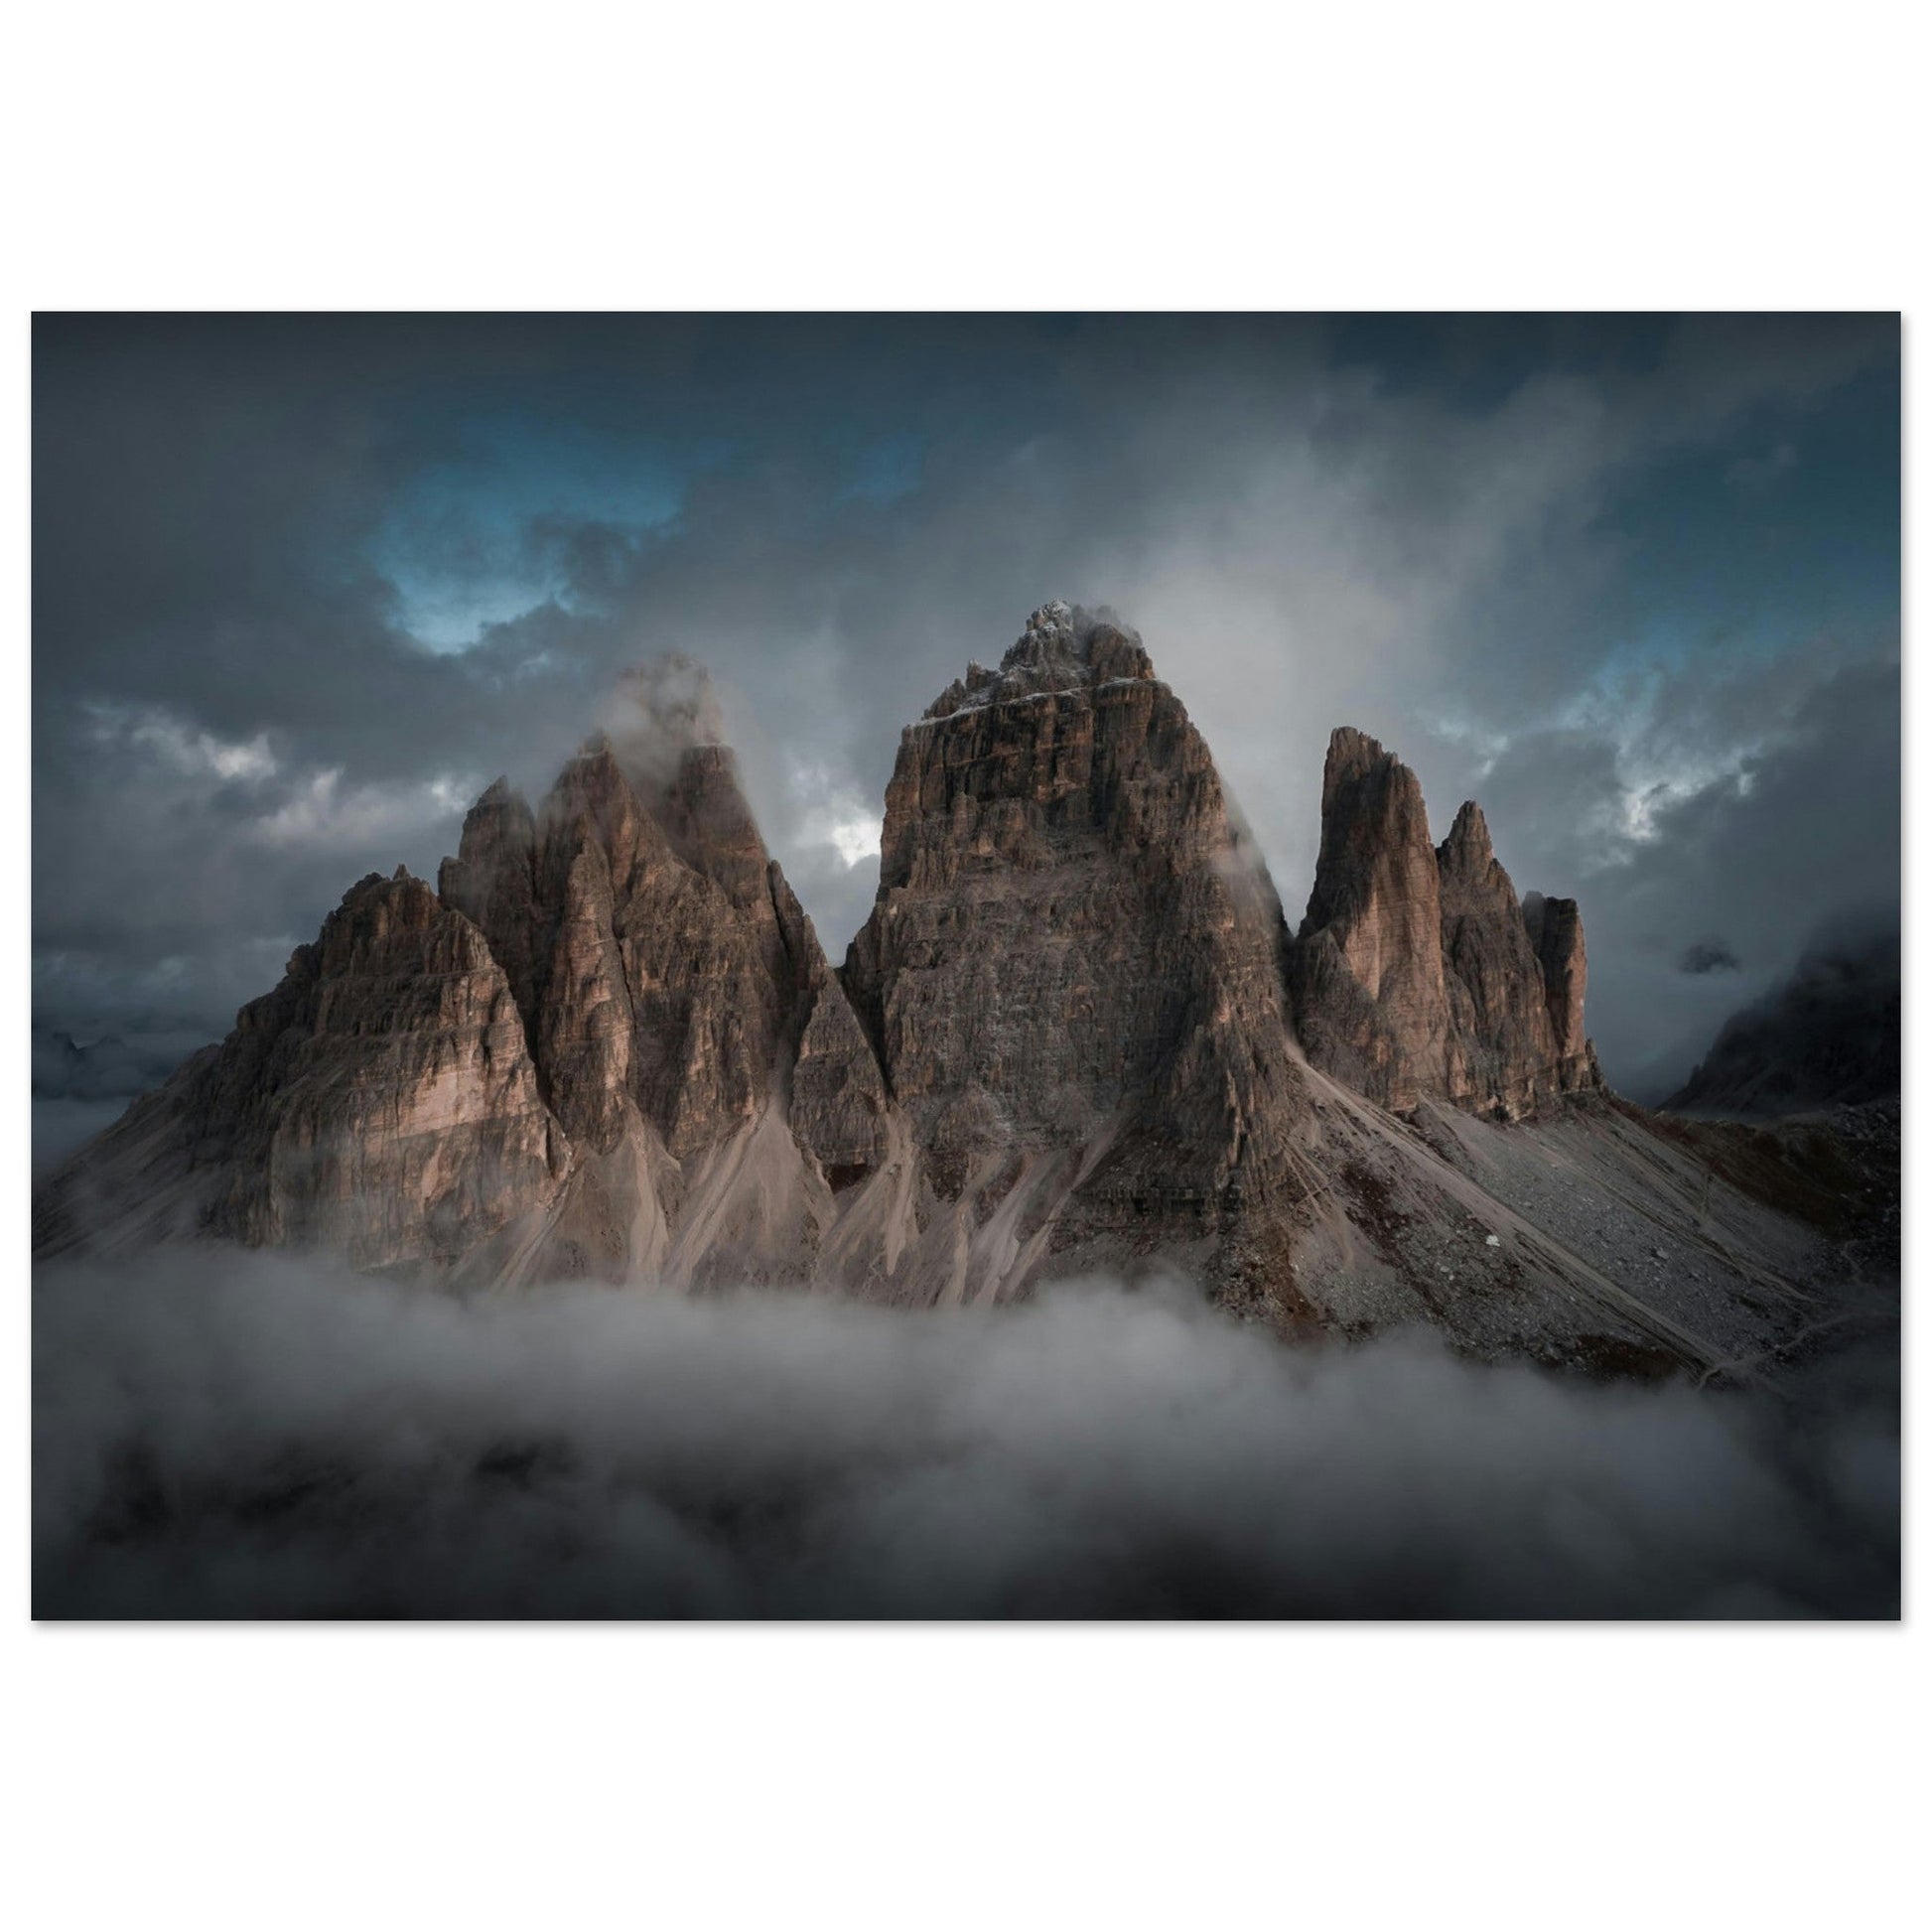 Vente Photo des Tre Cime di Lavaredo, Italie #2 - Tableau photo paysage